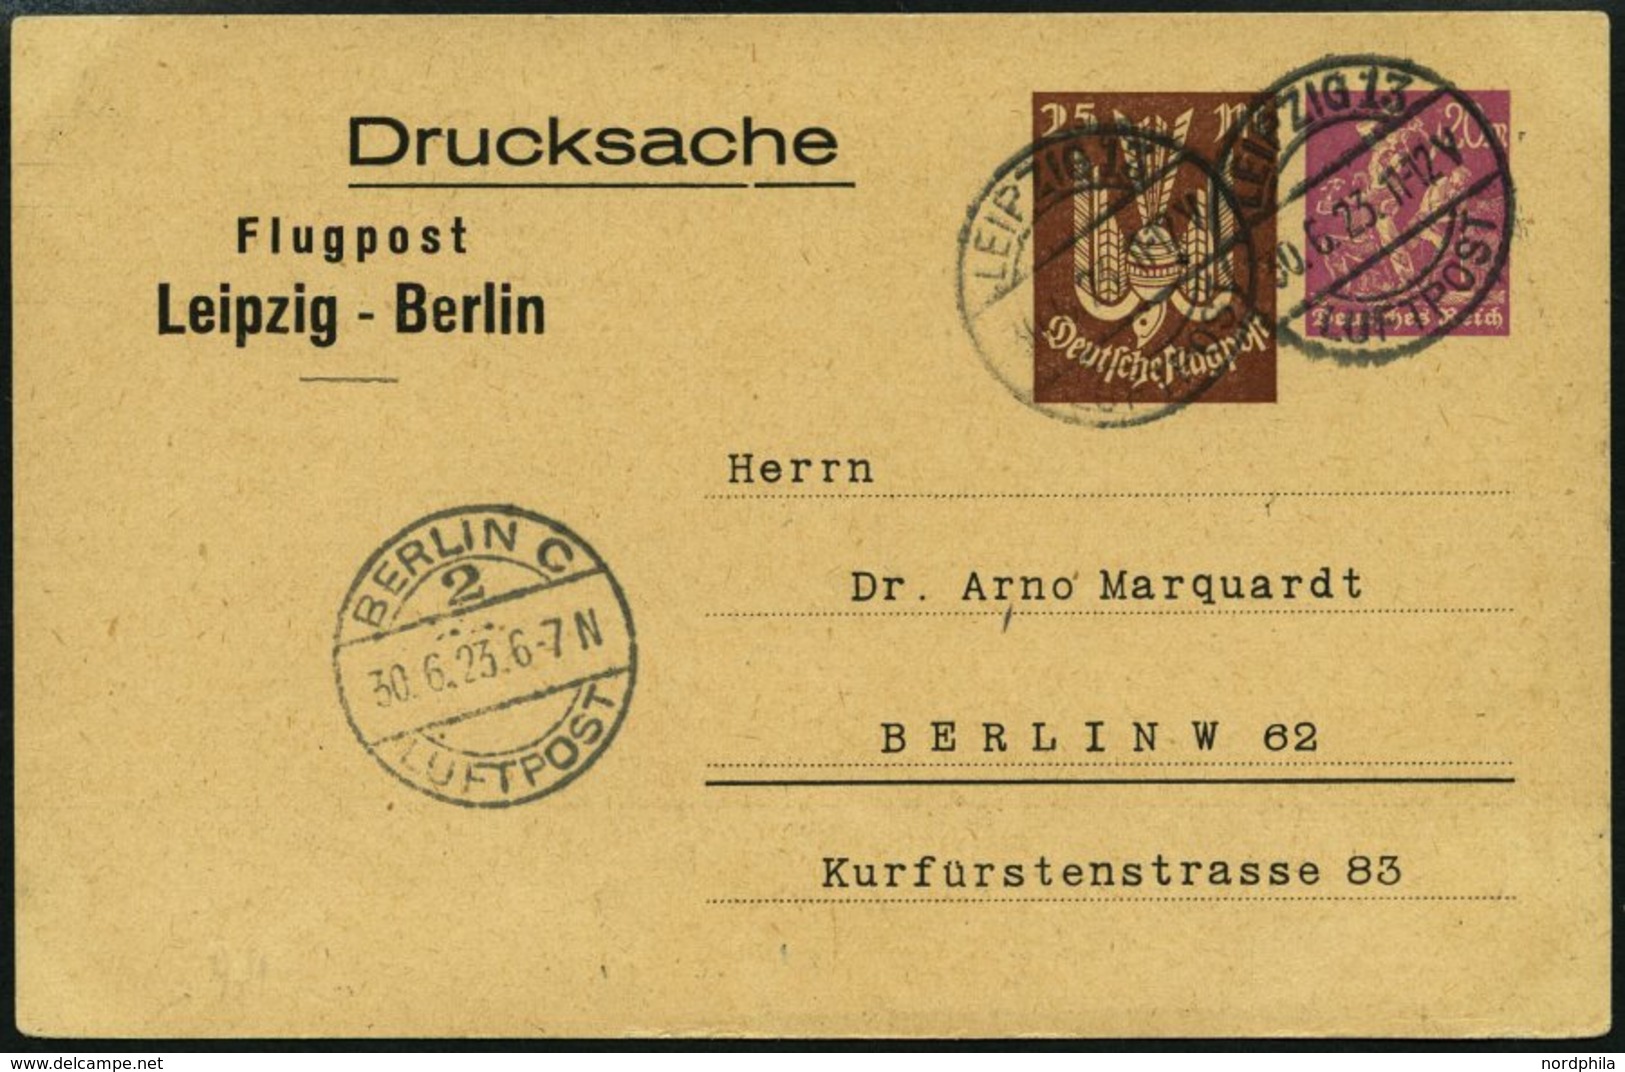 LUFTPOST-GANZSACHEN LPP 81-013 BRIEF, 30.6.1923, 25 Mark Braun Neben 20 Mark Lila Drucksache, Leipzig - Berlin, Prachtka - Aerei